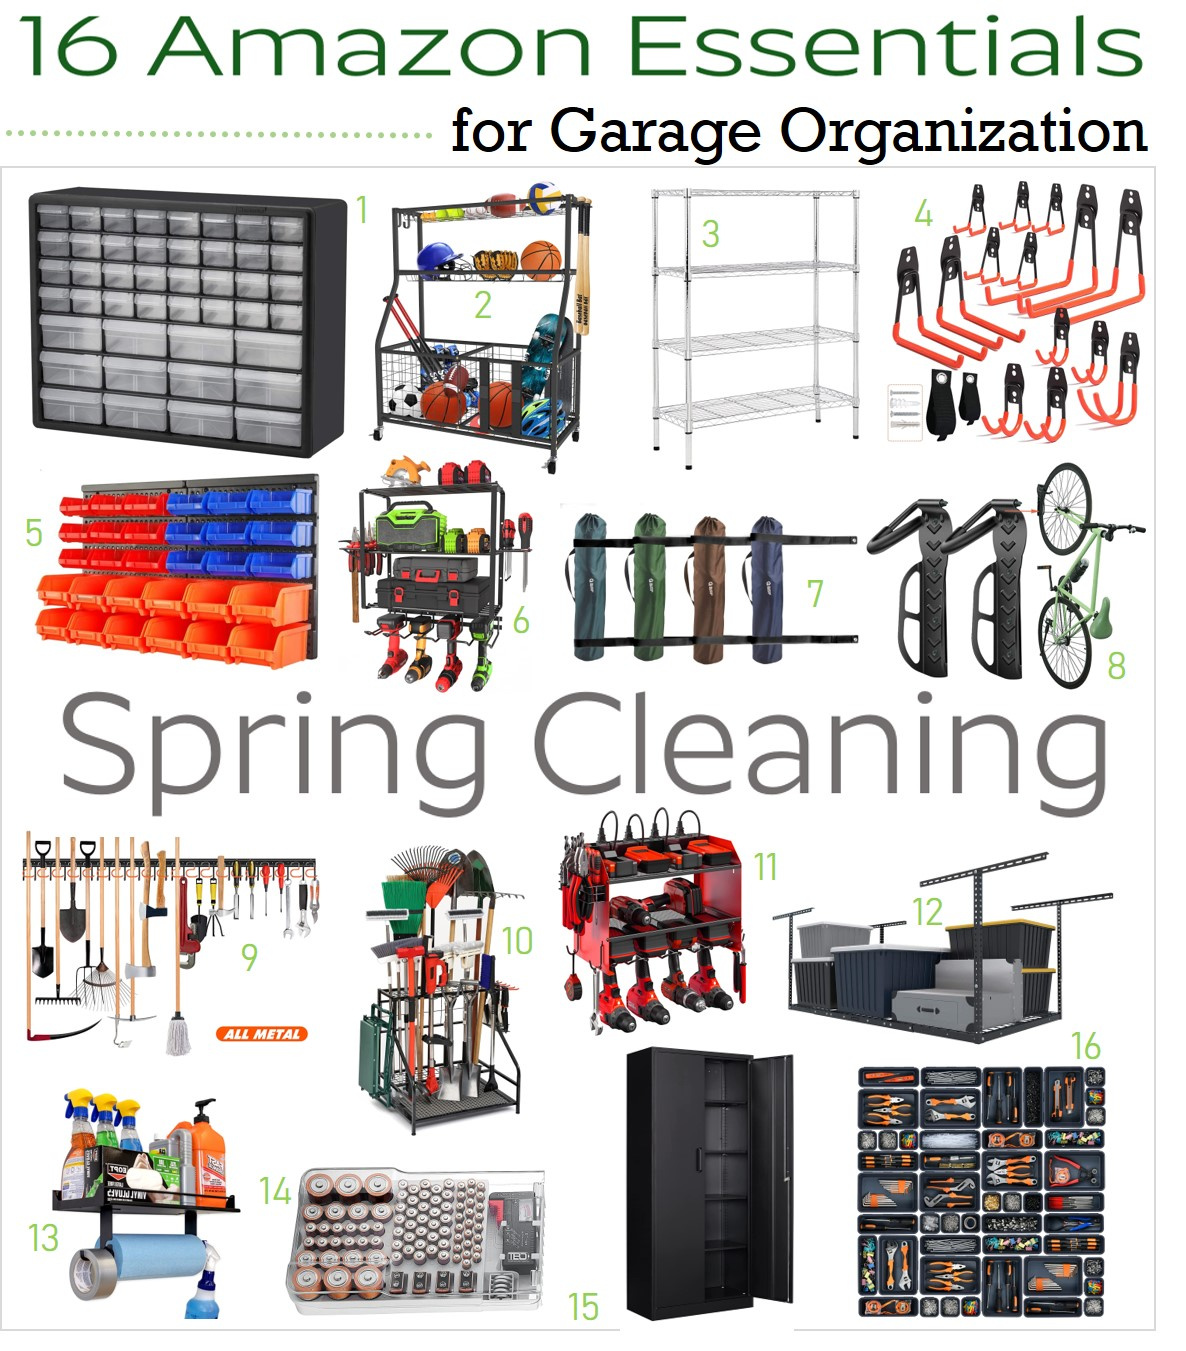 Garage Organization Essentials from Amazon